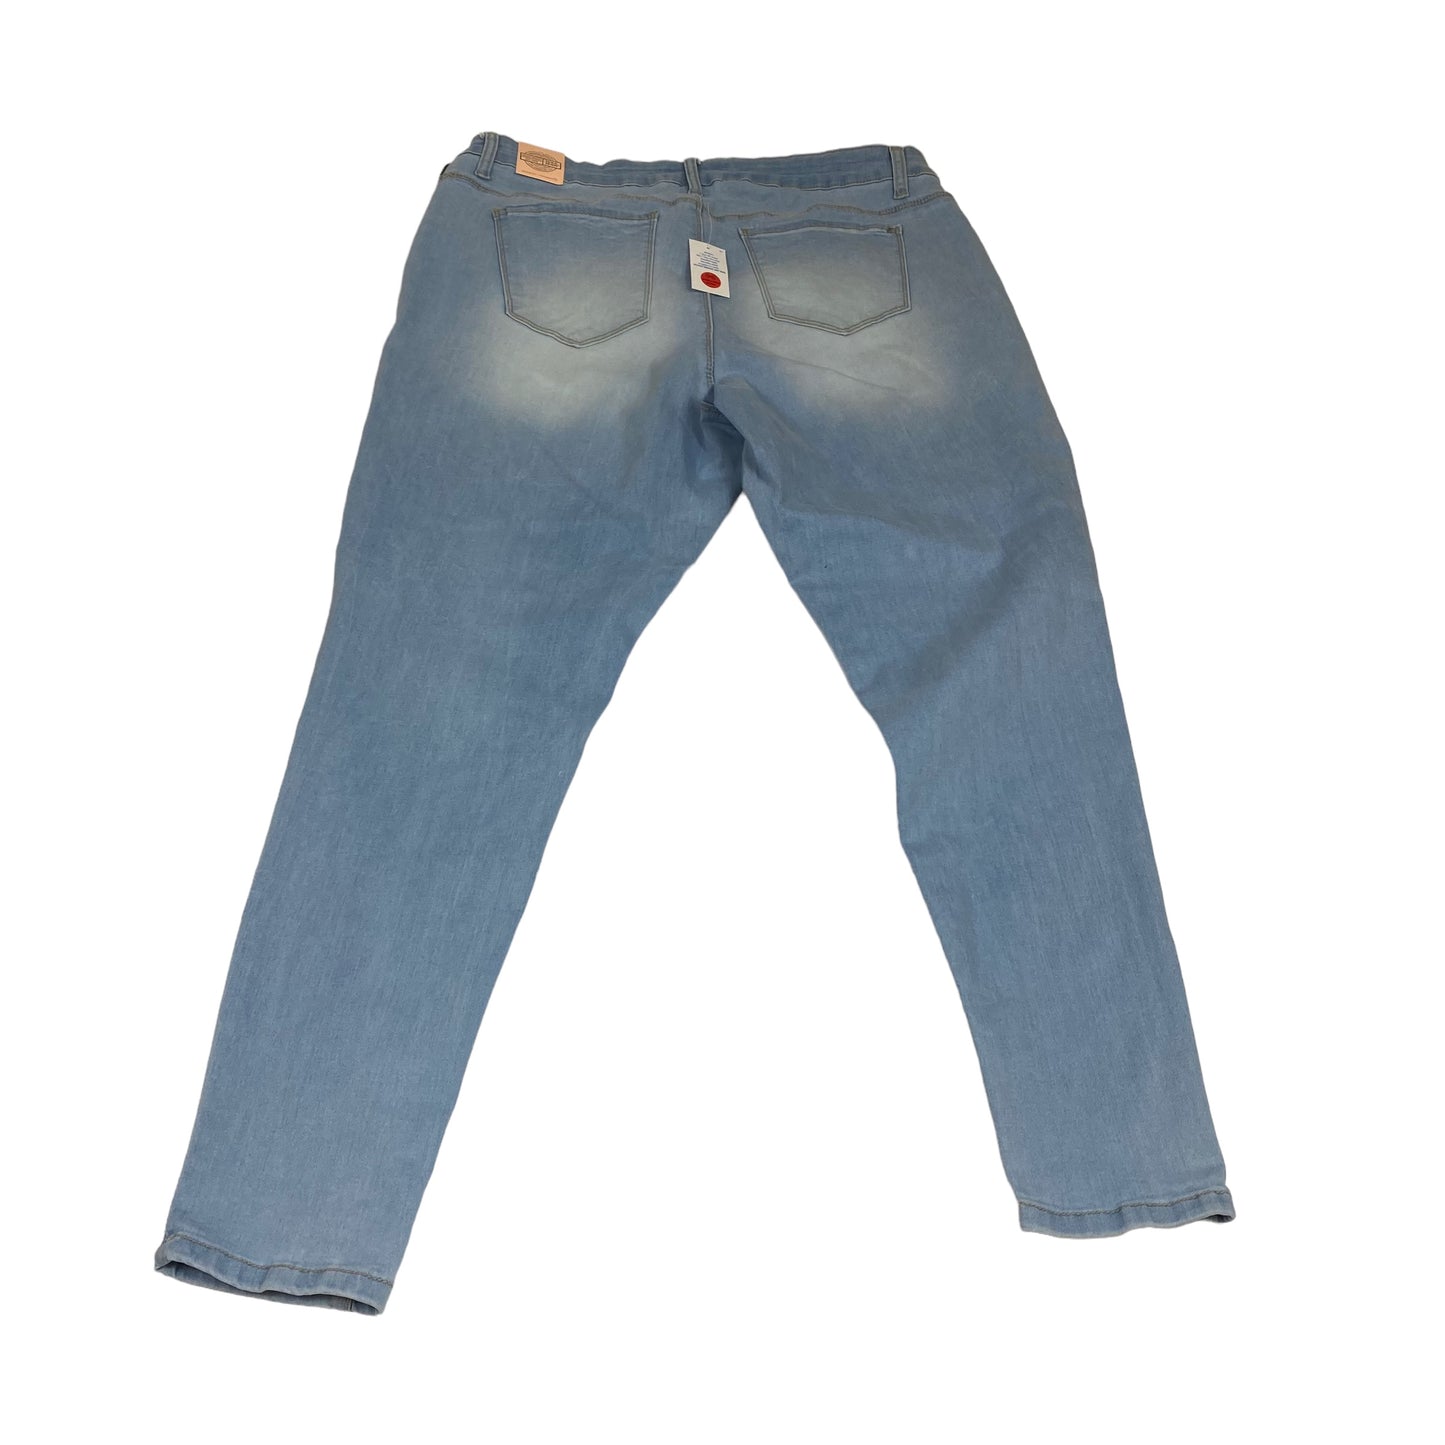 Jeans Skinny By Wax Jean  Size: 20